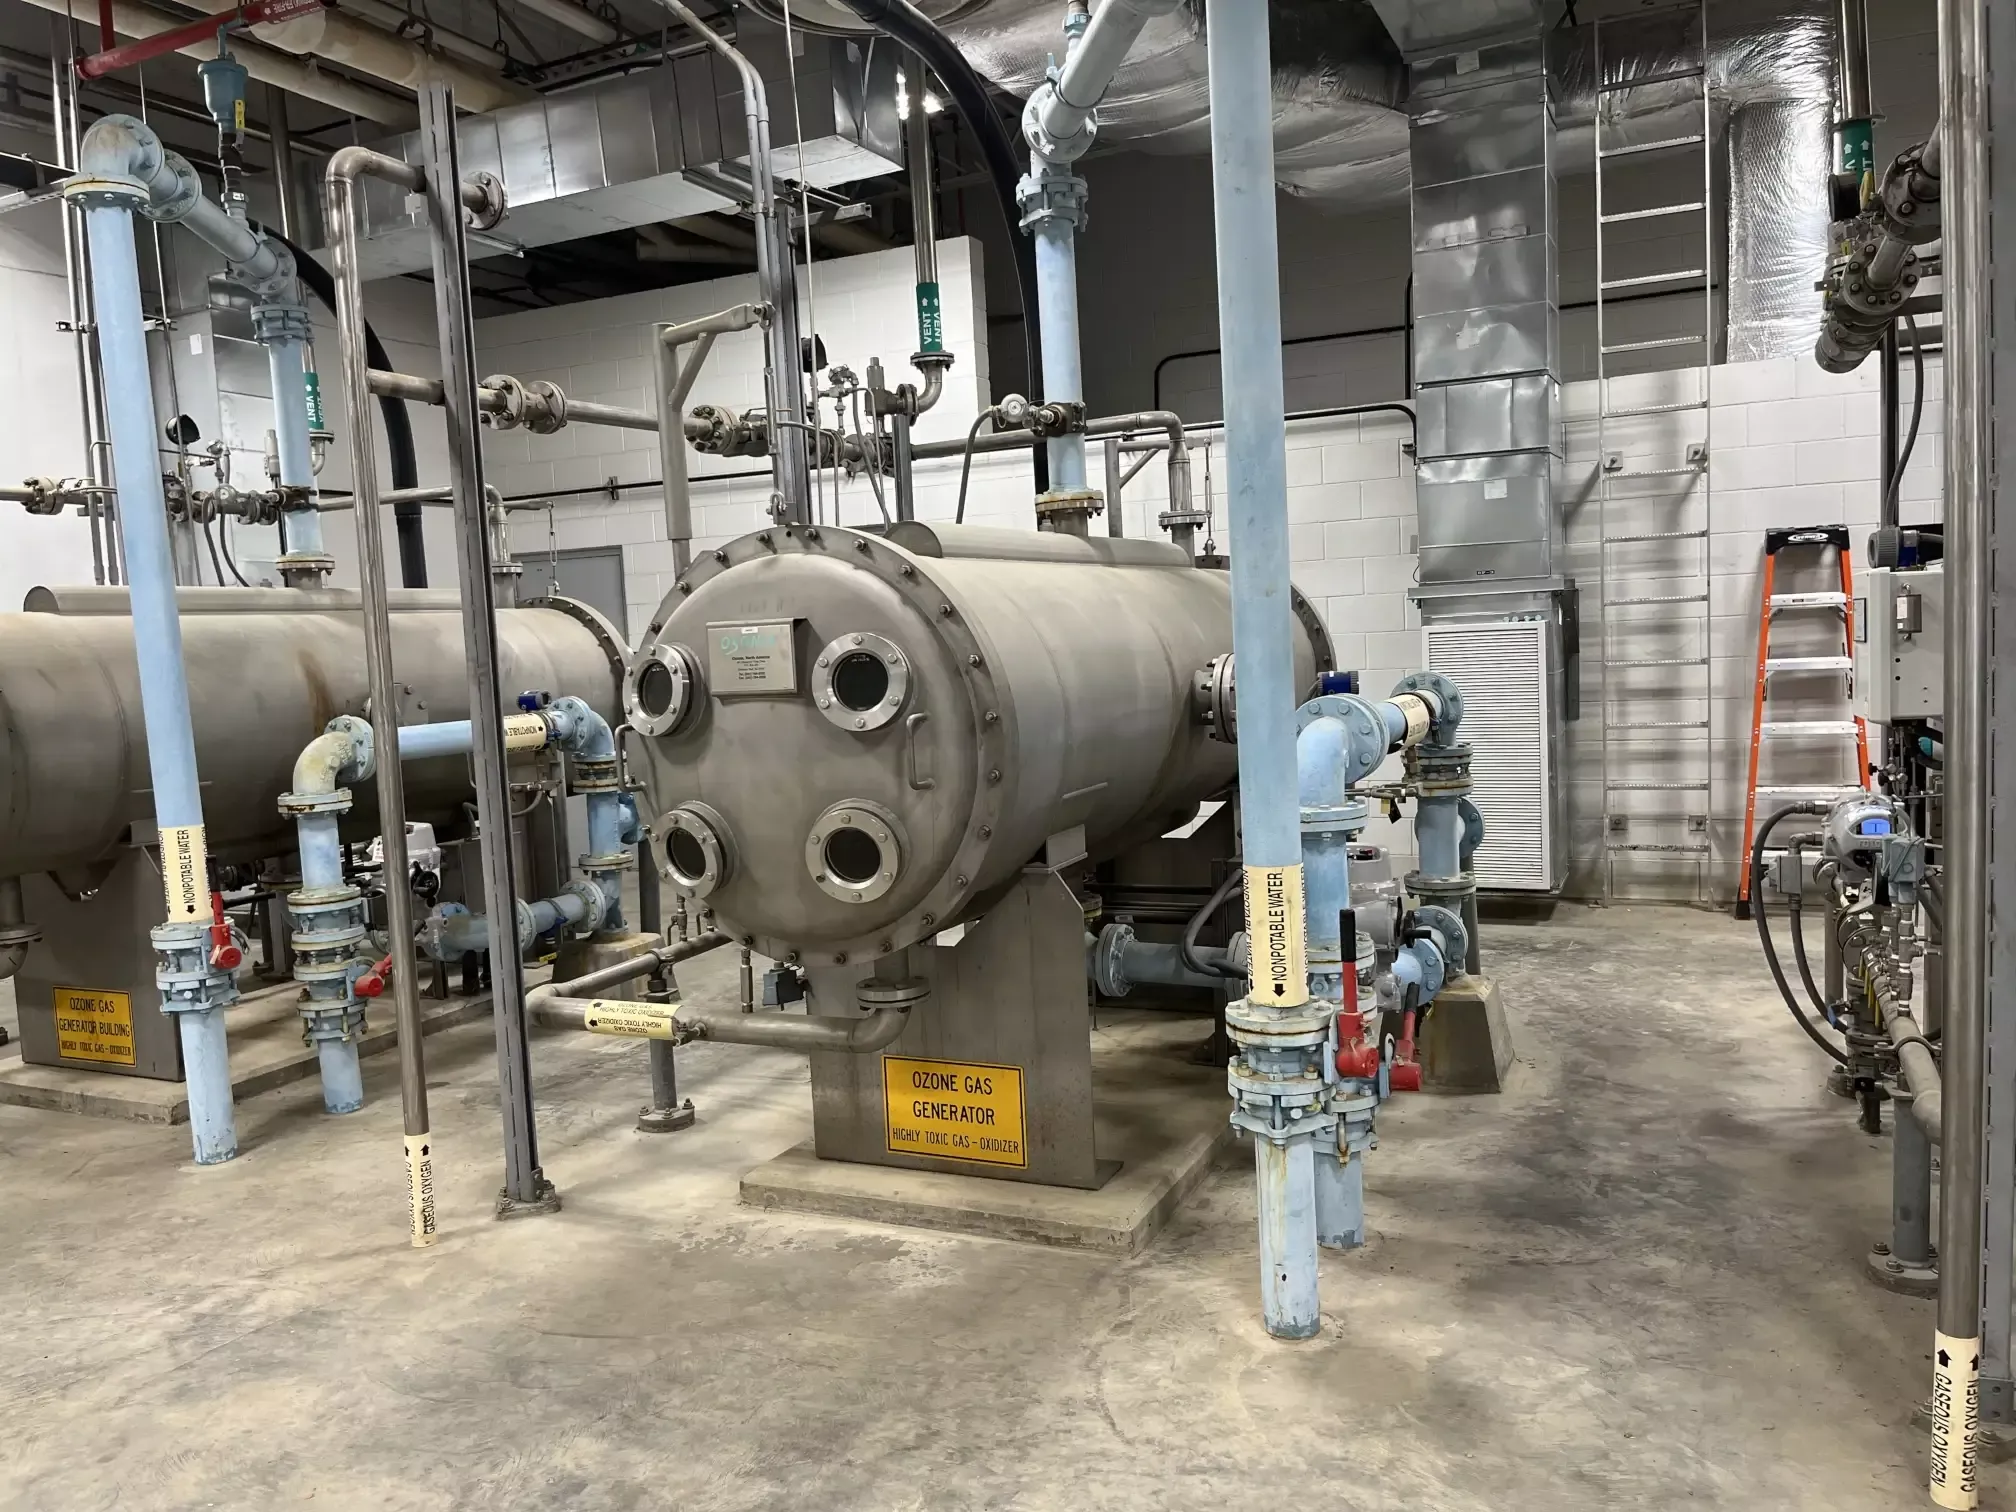 Commercial Ion-Generator in Arlington Texas 